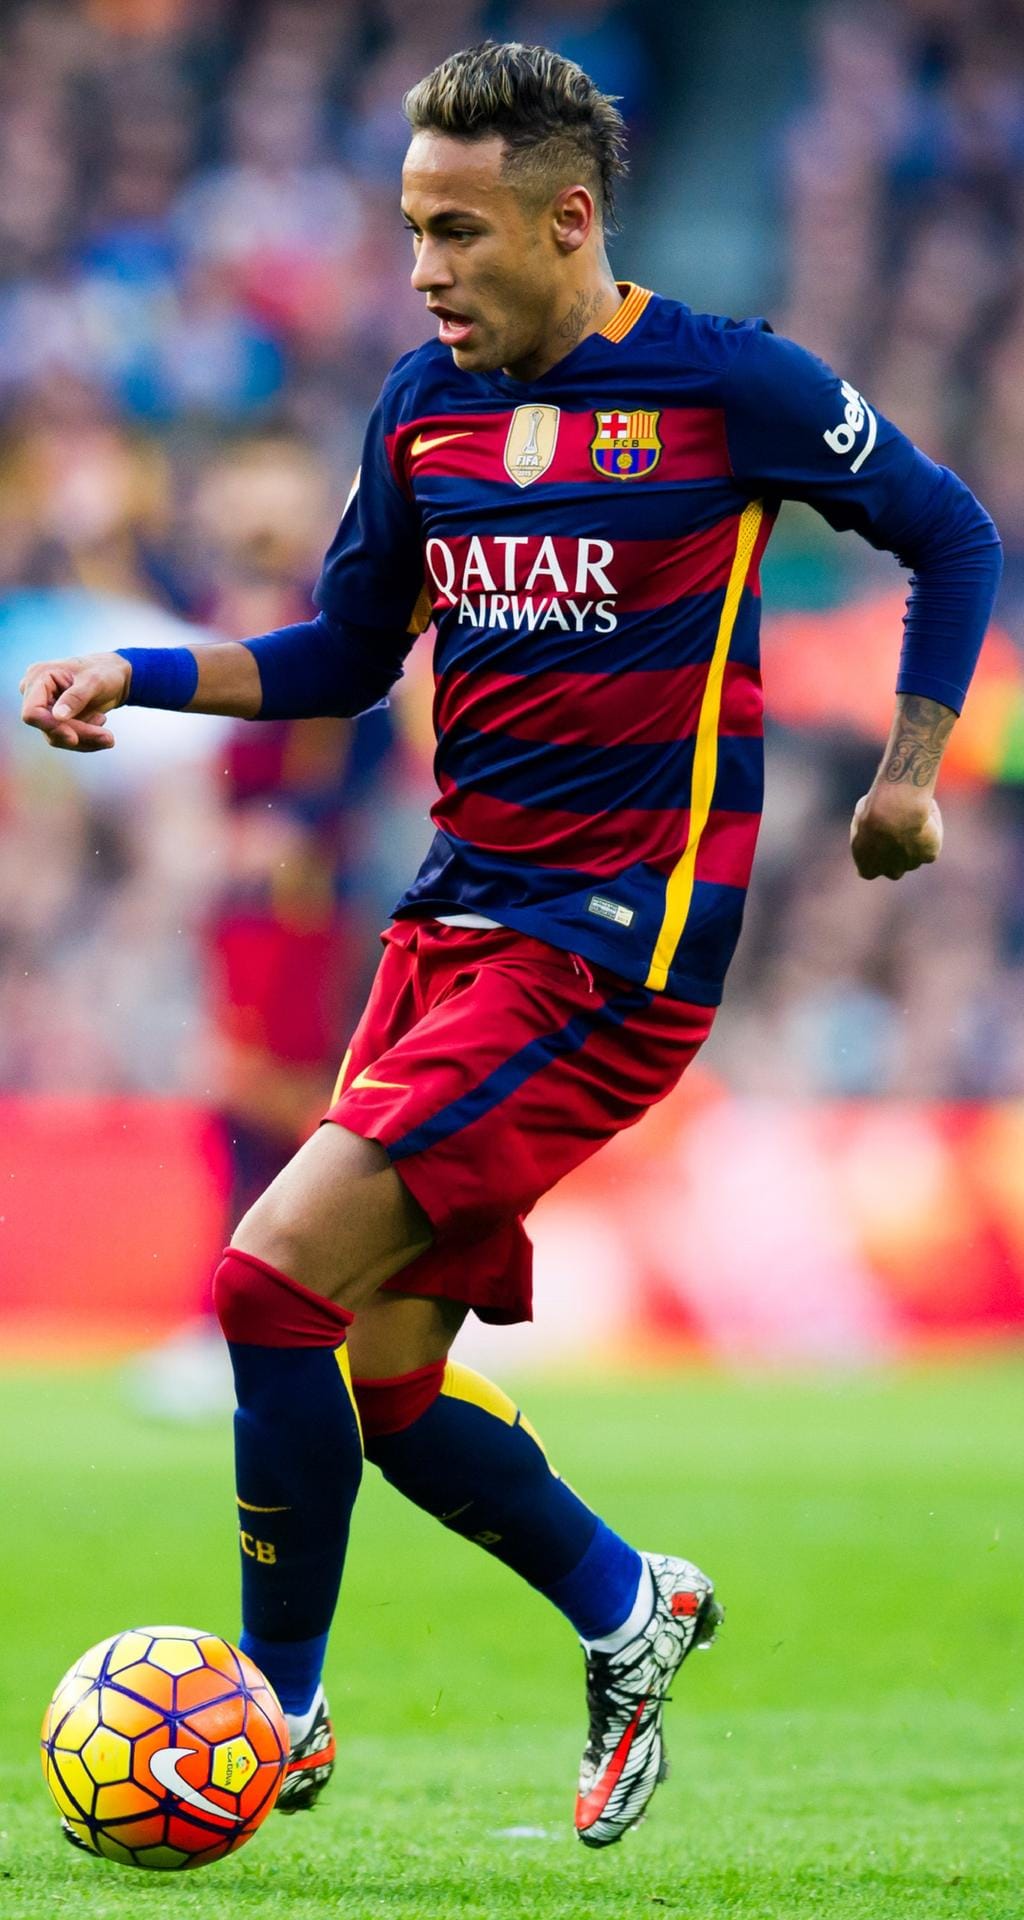 Platz 7: Fußballer Neymar (105 Millionen US-Dollar)